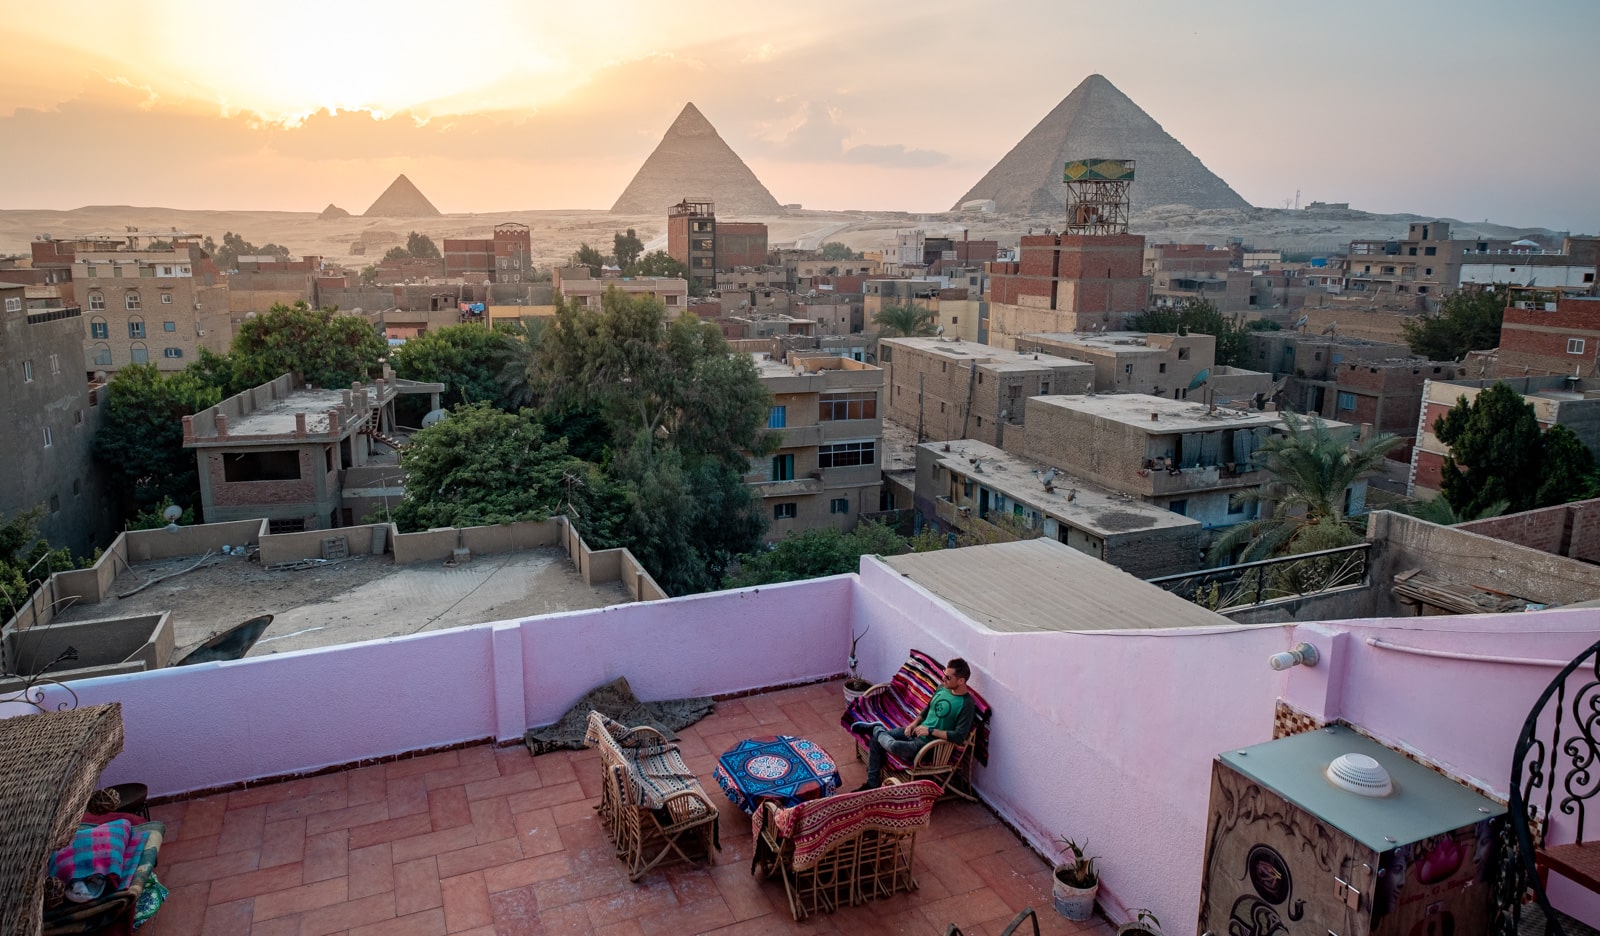 Varanda de um hotel local no Cairo com vista para as pirâmides do Egito